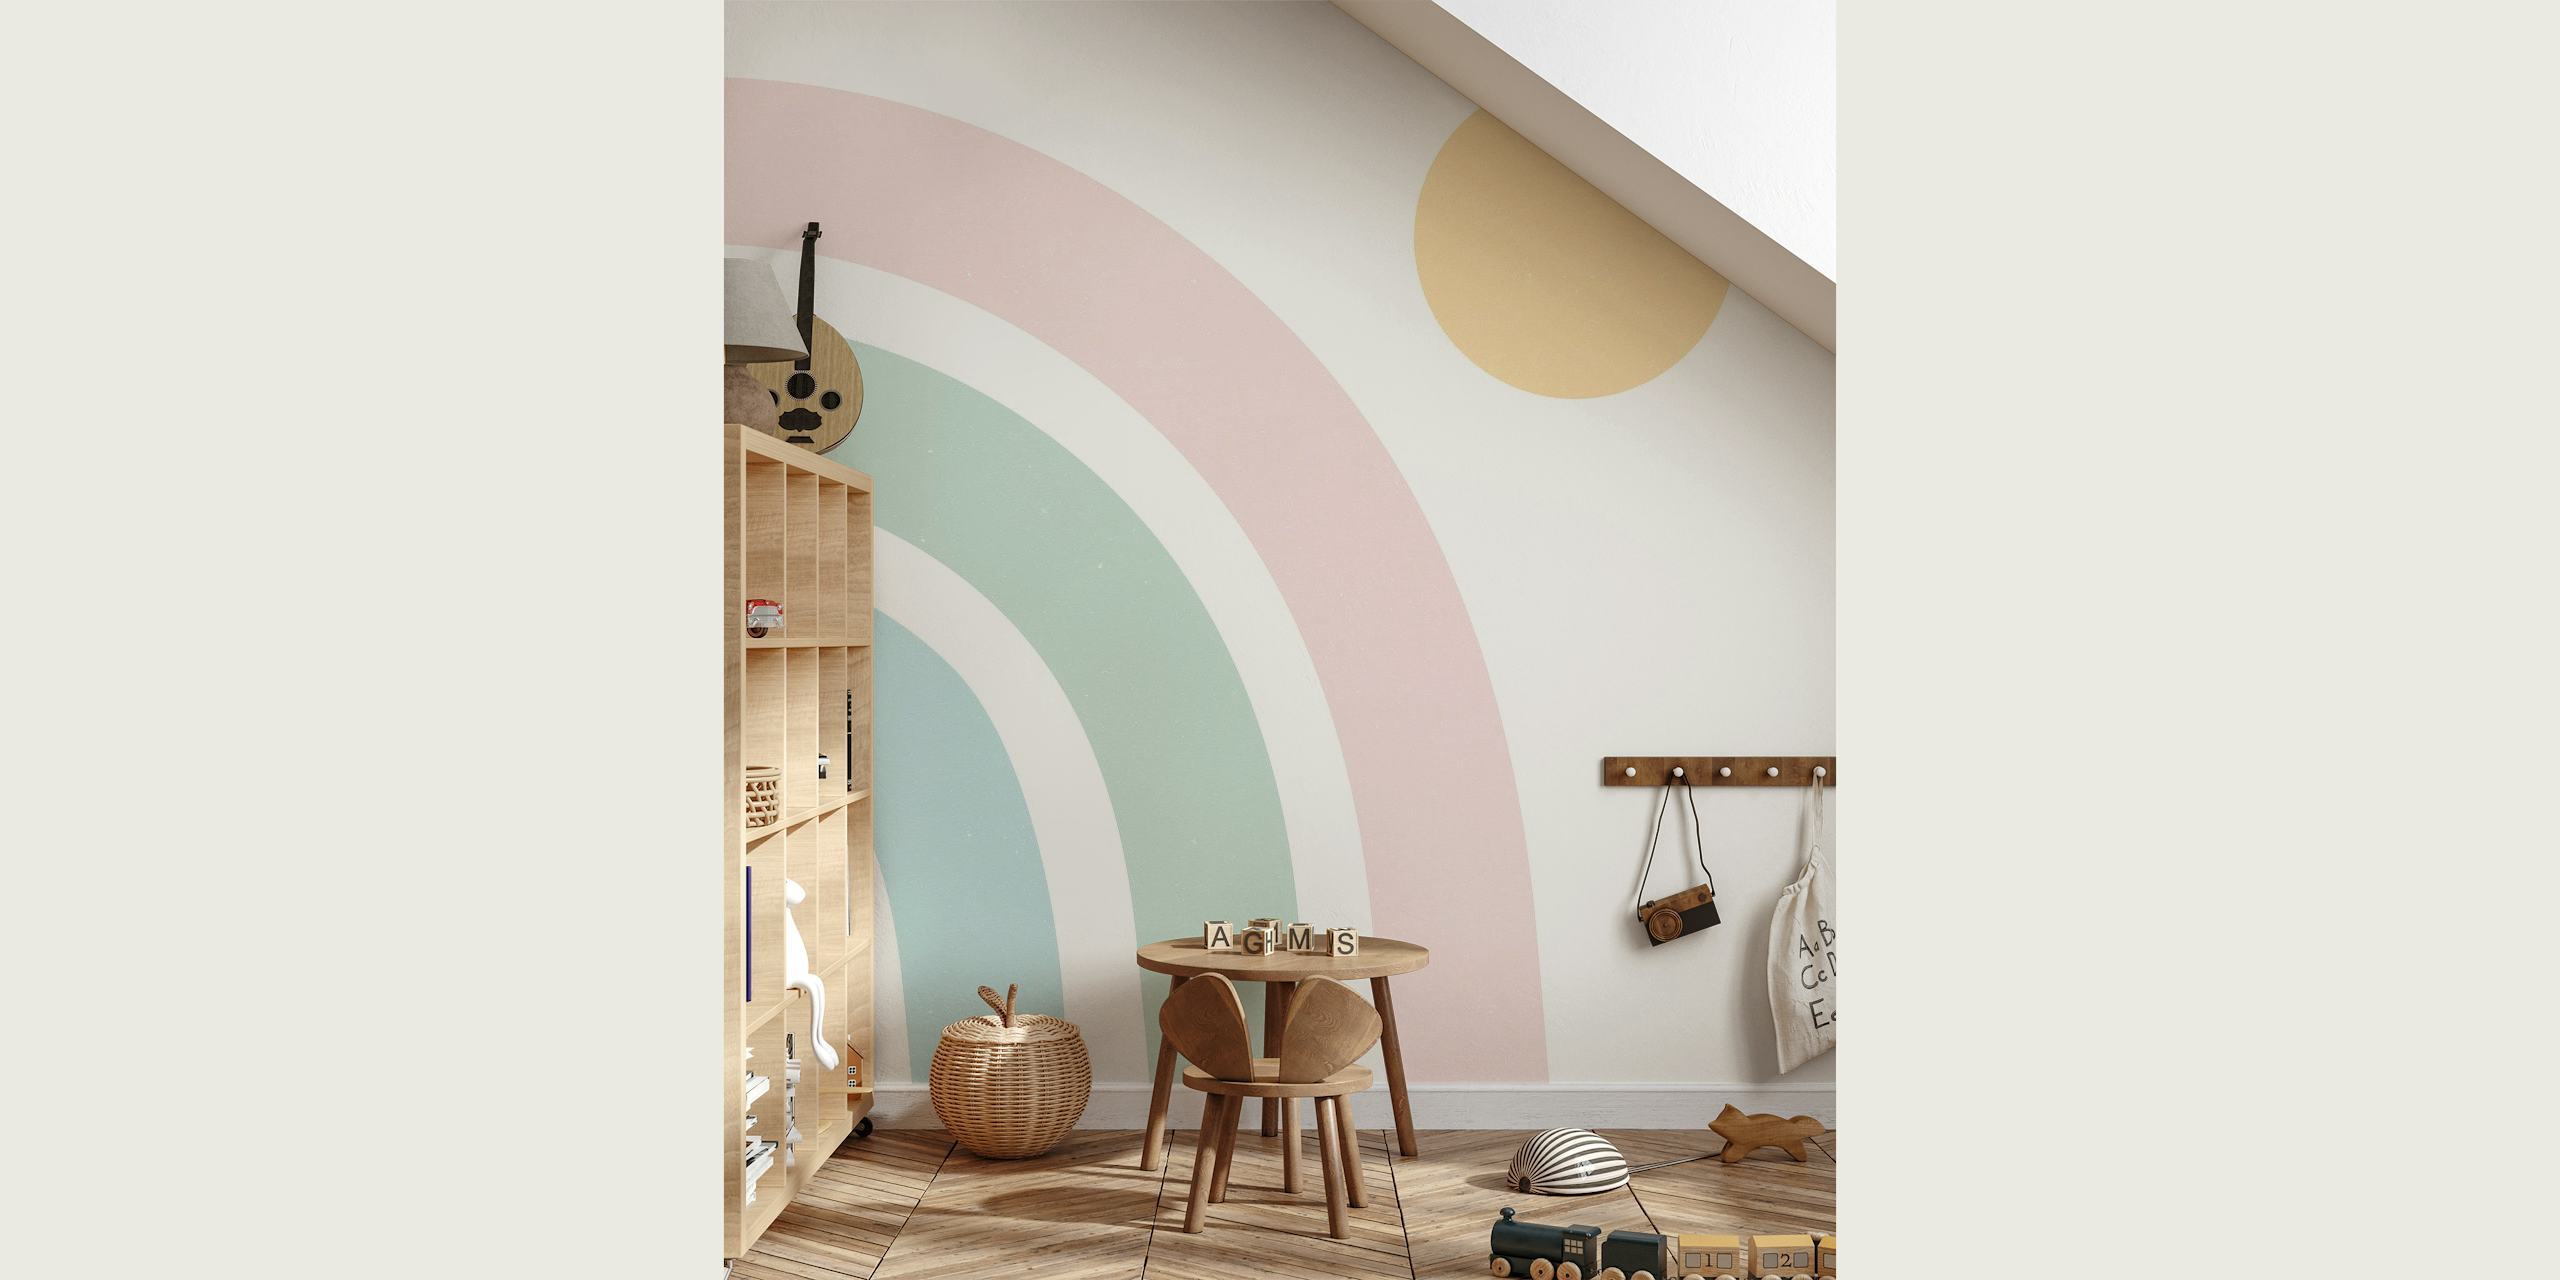 Buntes Regenbogen-Wandbild mit bogenförmigen Bändern in Pastelltönen